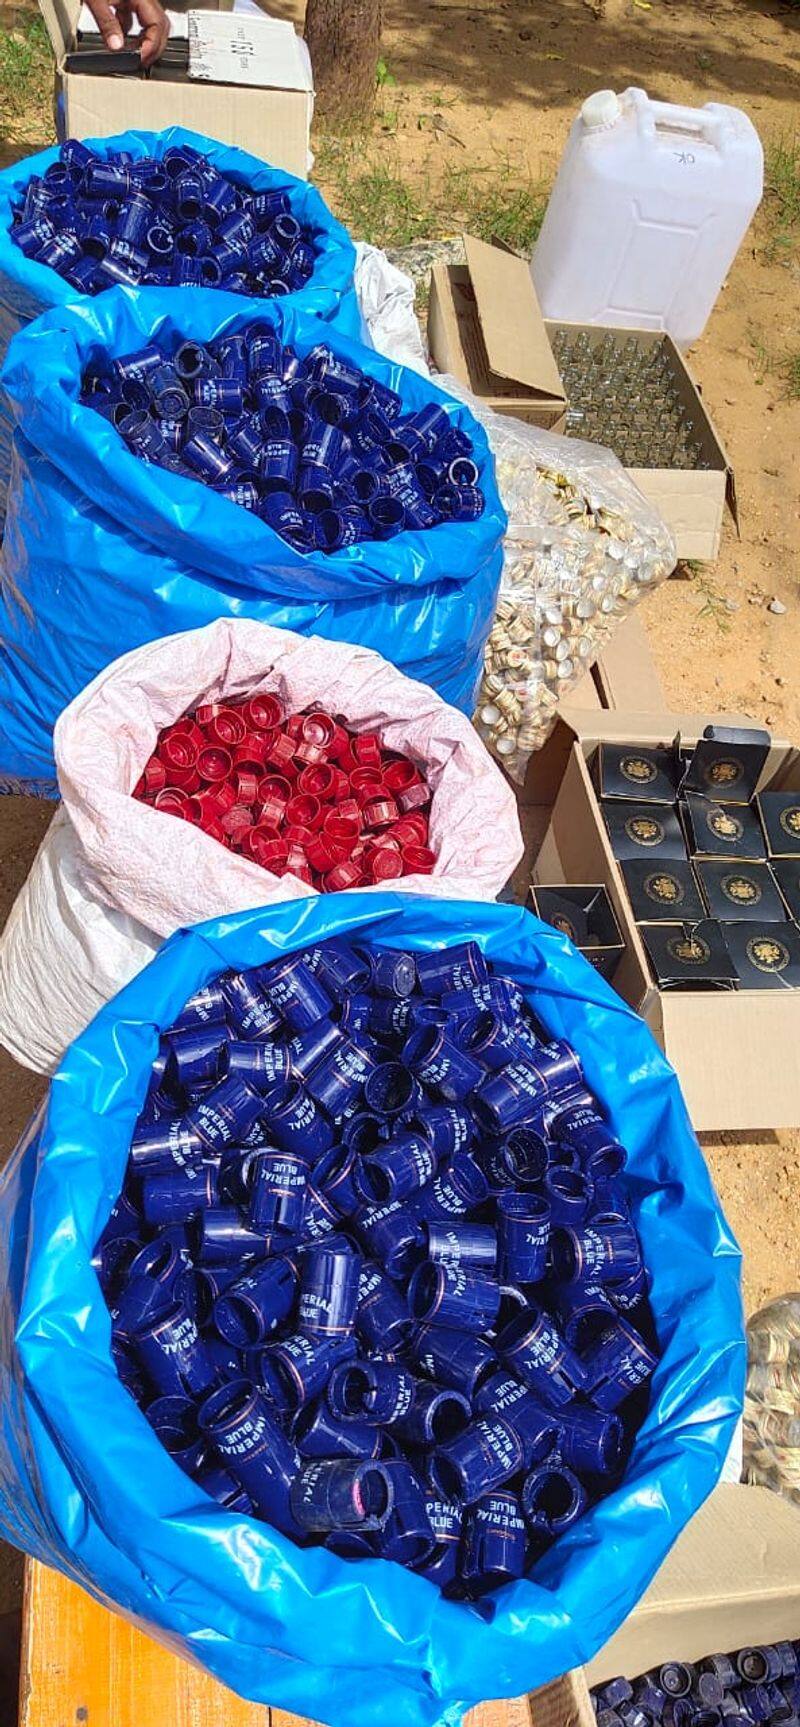 police seizes illicit liquor unit at pochampally in yadadri district